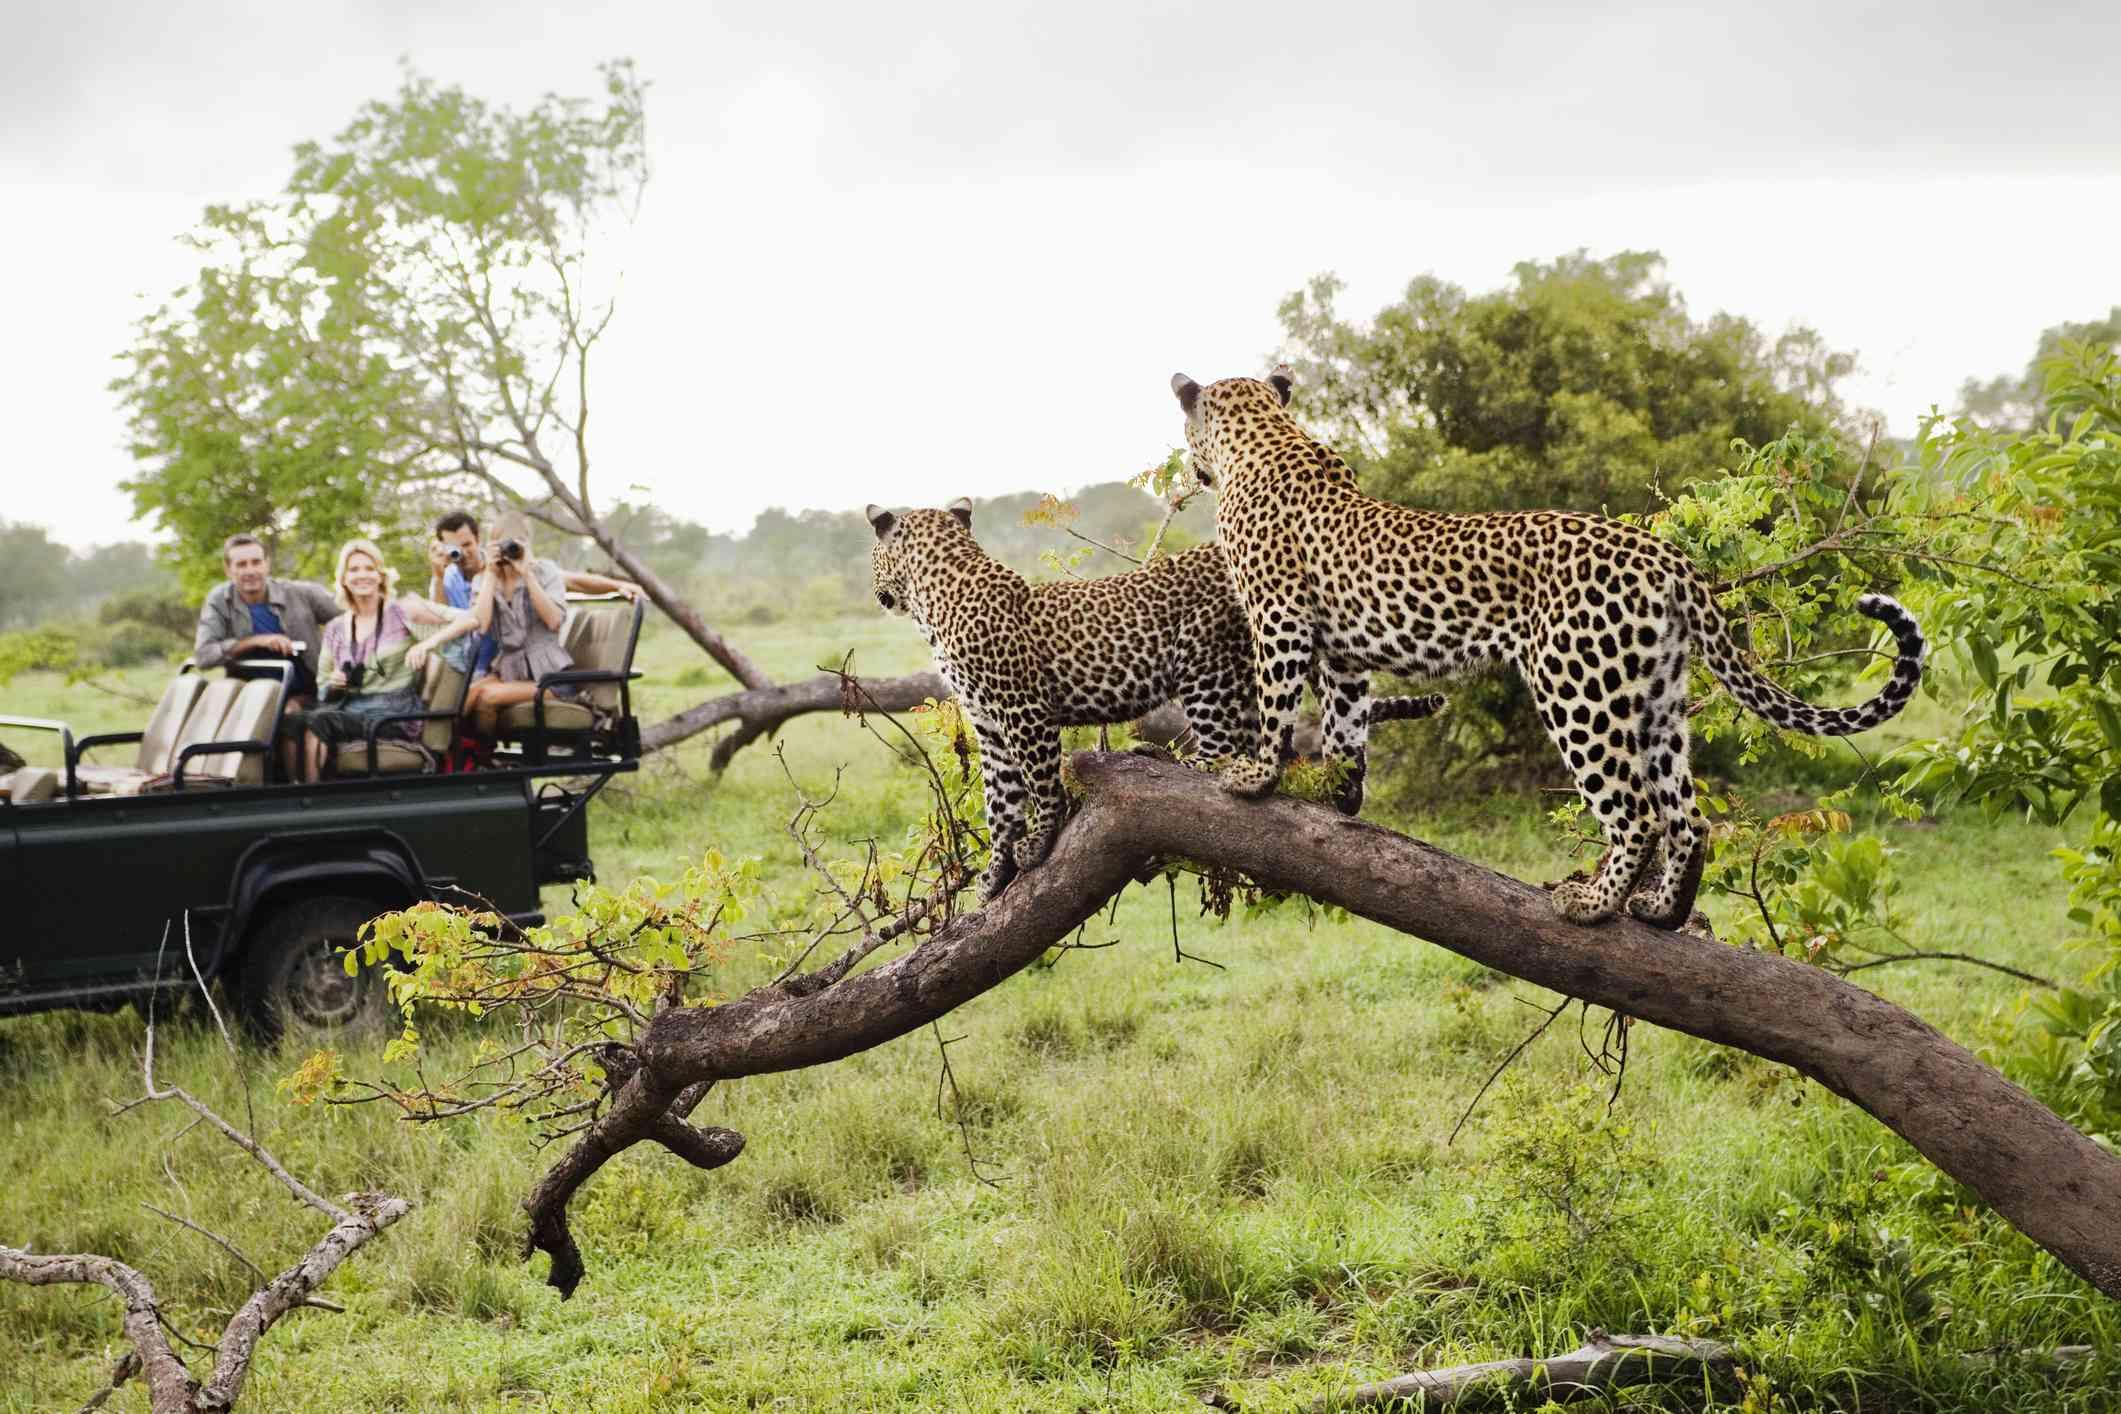 Kruger National Park, South Africa Overview